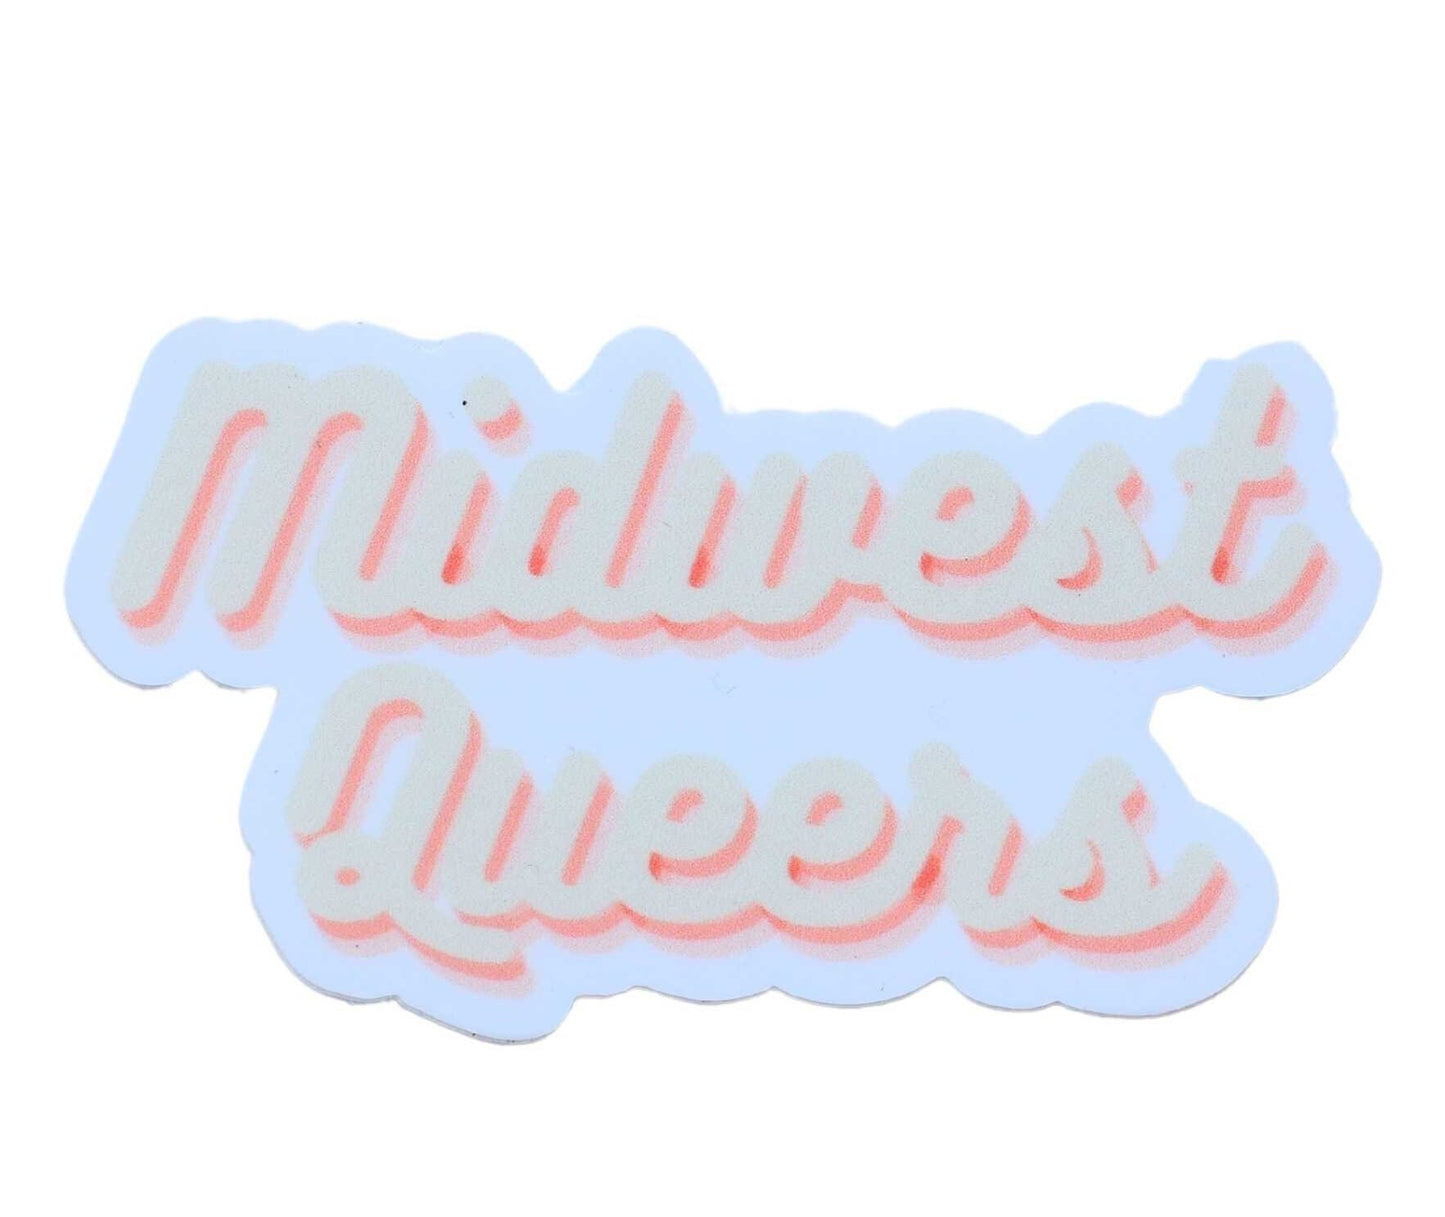 Midwest Queer Sticker, LGBTQ Sticker, Pride Merch, Vinyl Laptop Waterbottle Sticker, Funny Inspiration